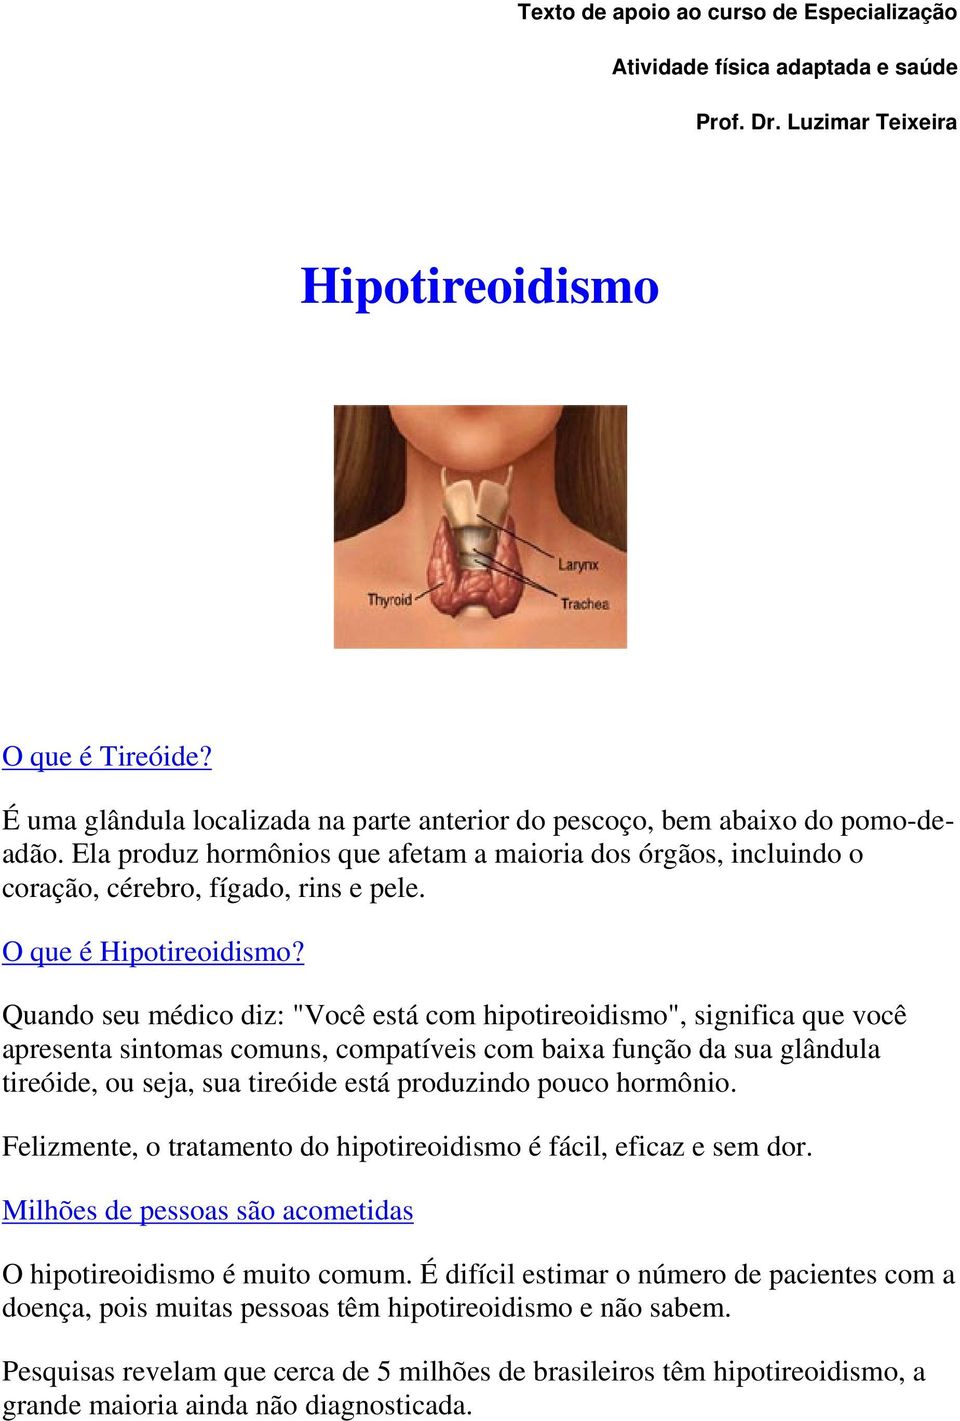 O que é Hipotireoidismo?